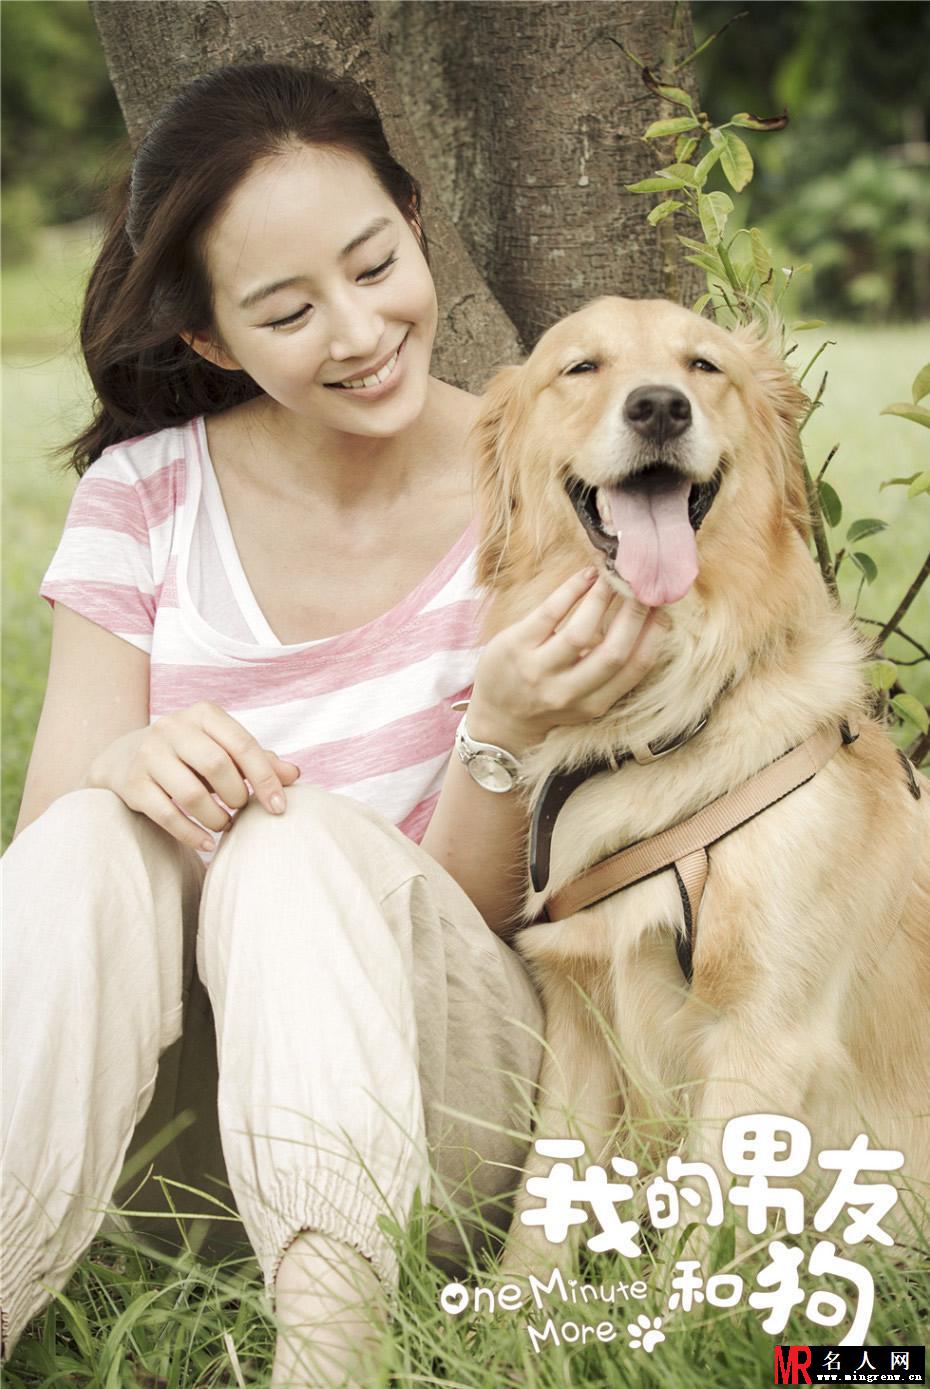 何润东张钧甯电影《我的男友和狗》幸福温暖海报曝光(1)